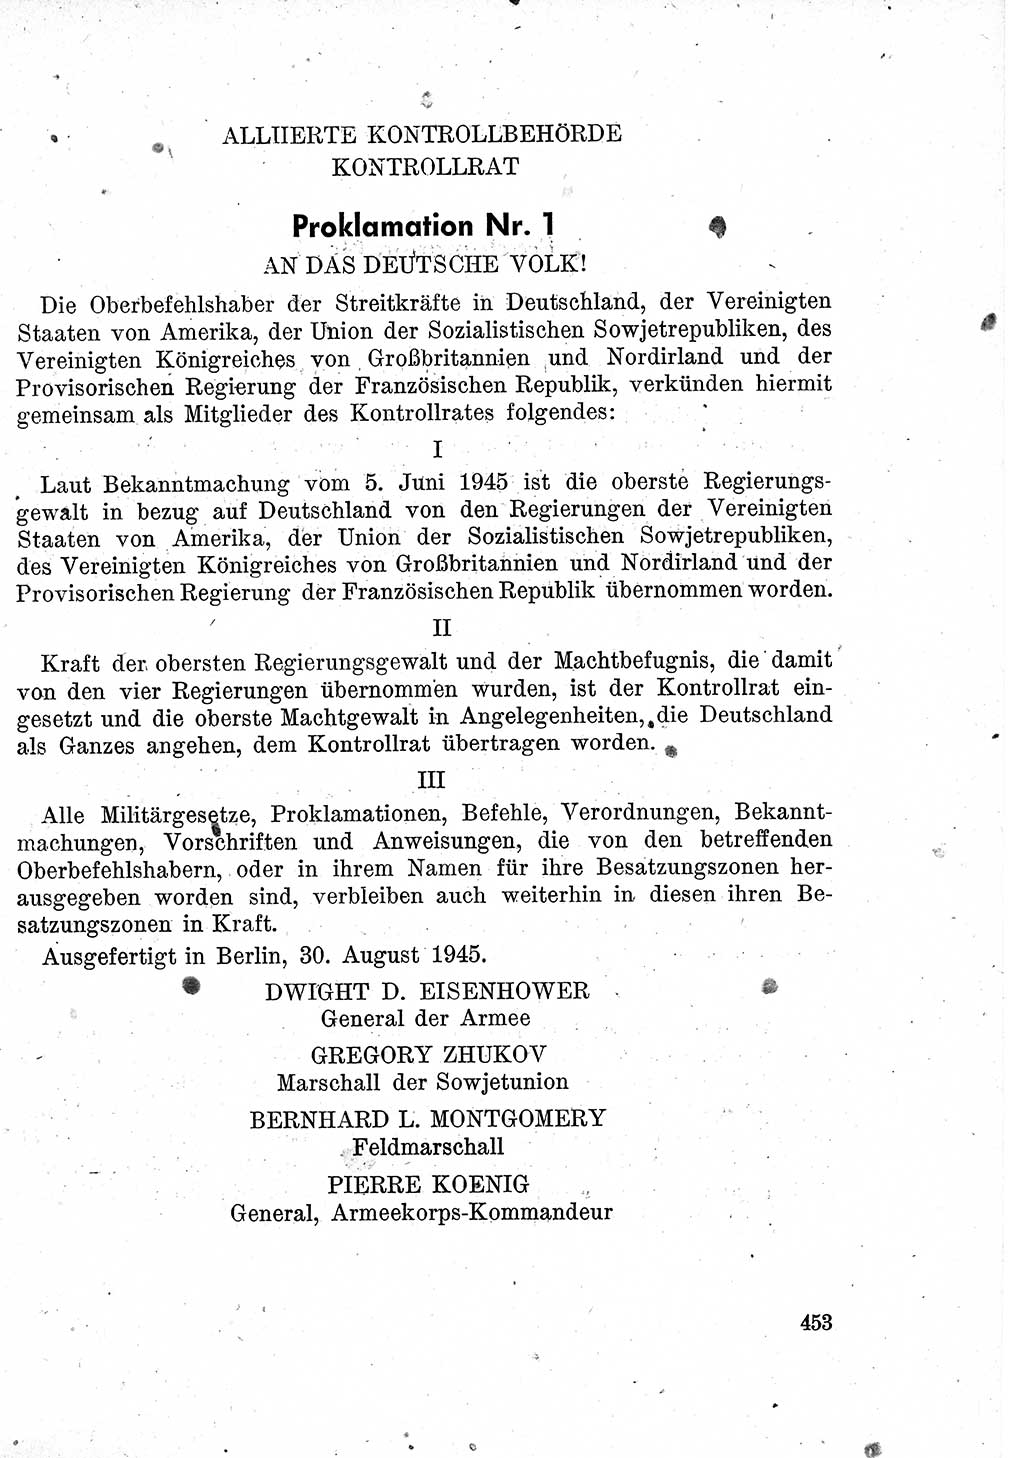 Das Recht der Besatzungsmacht (Deutschland), Proklamationen, Deklerationen, Verordnungen, Gesetze und Bekanntmachungen 1947, Seite 453 (R. Bes. Dtl. 1947, S. 453)